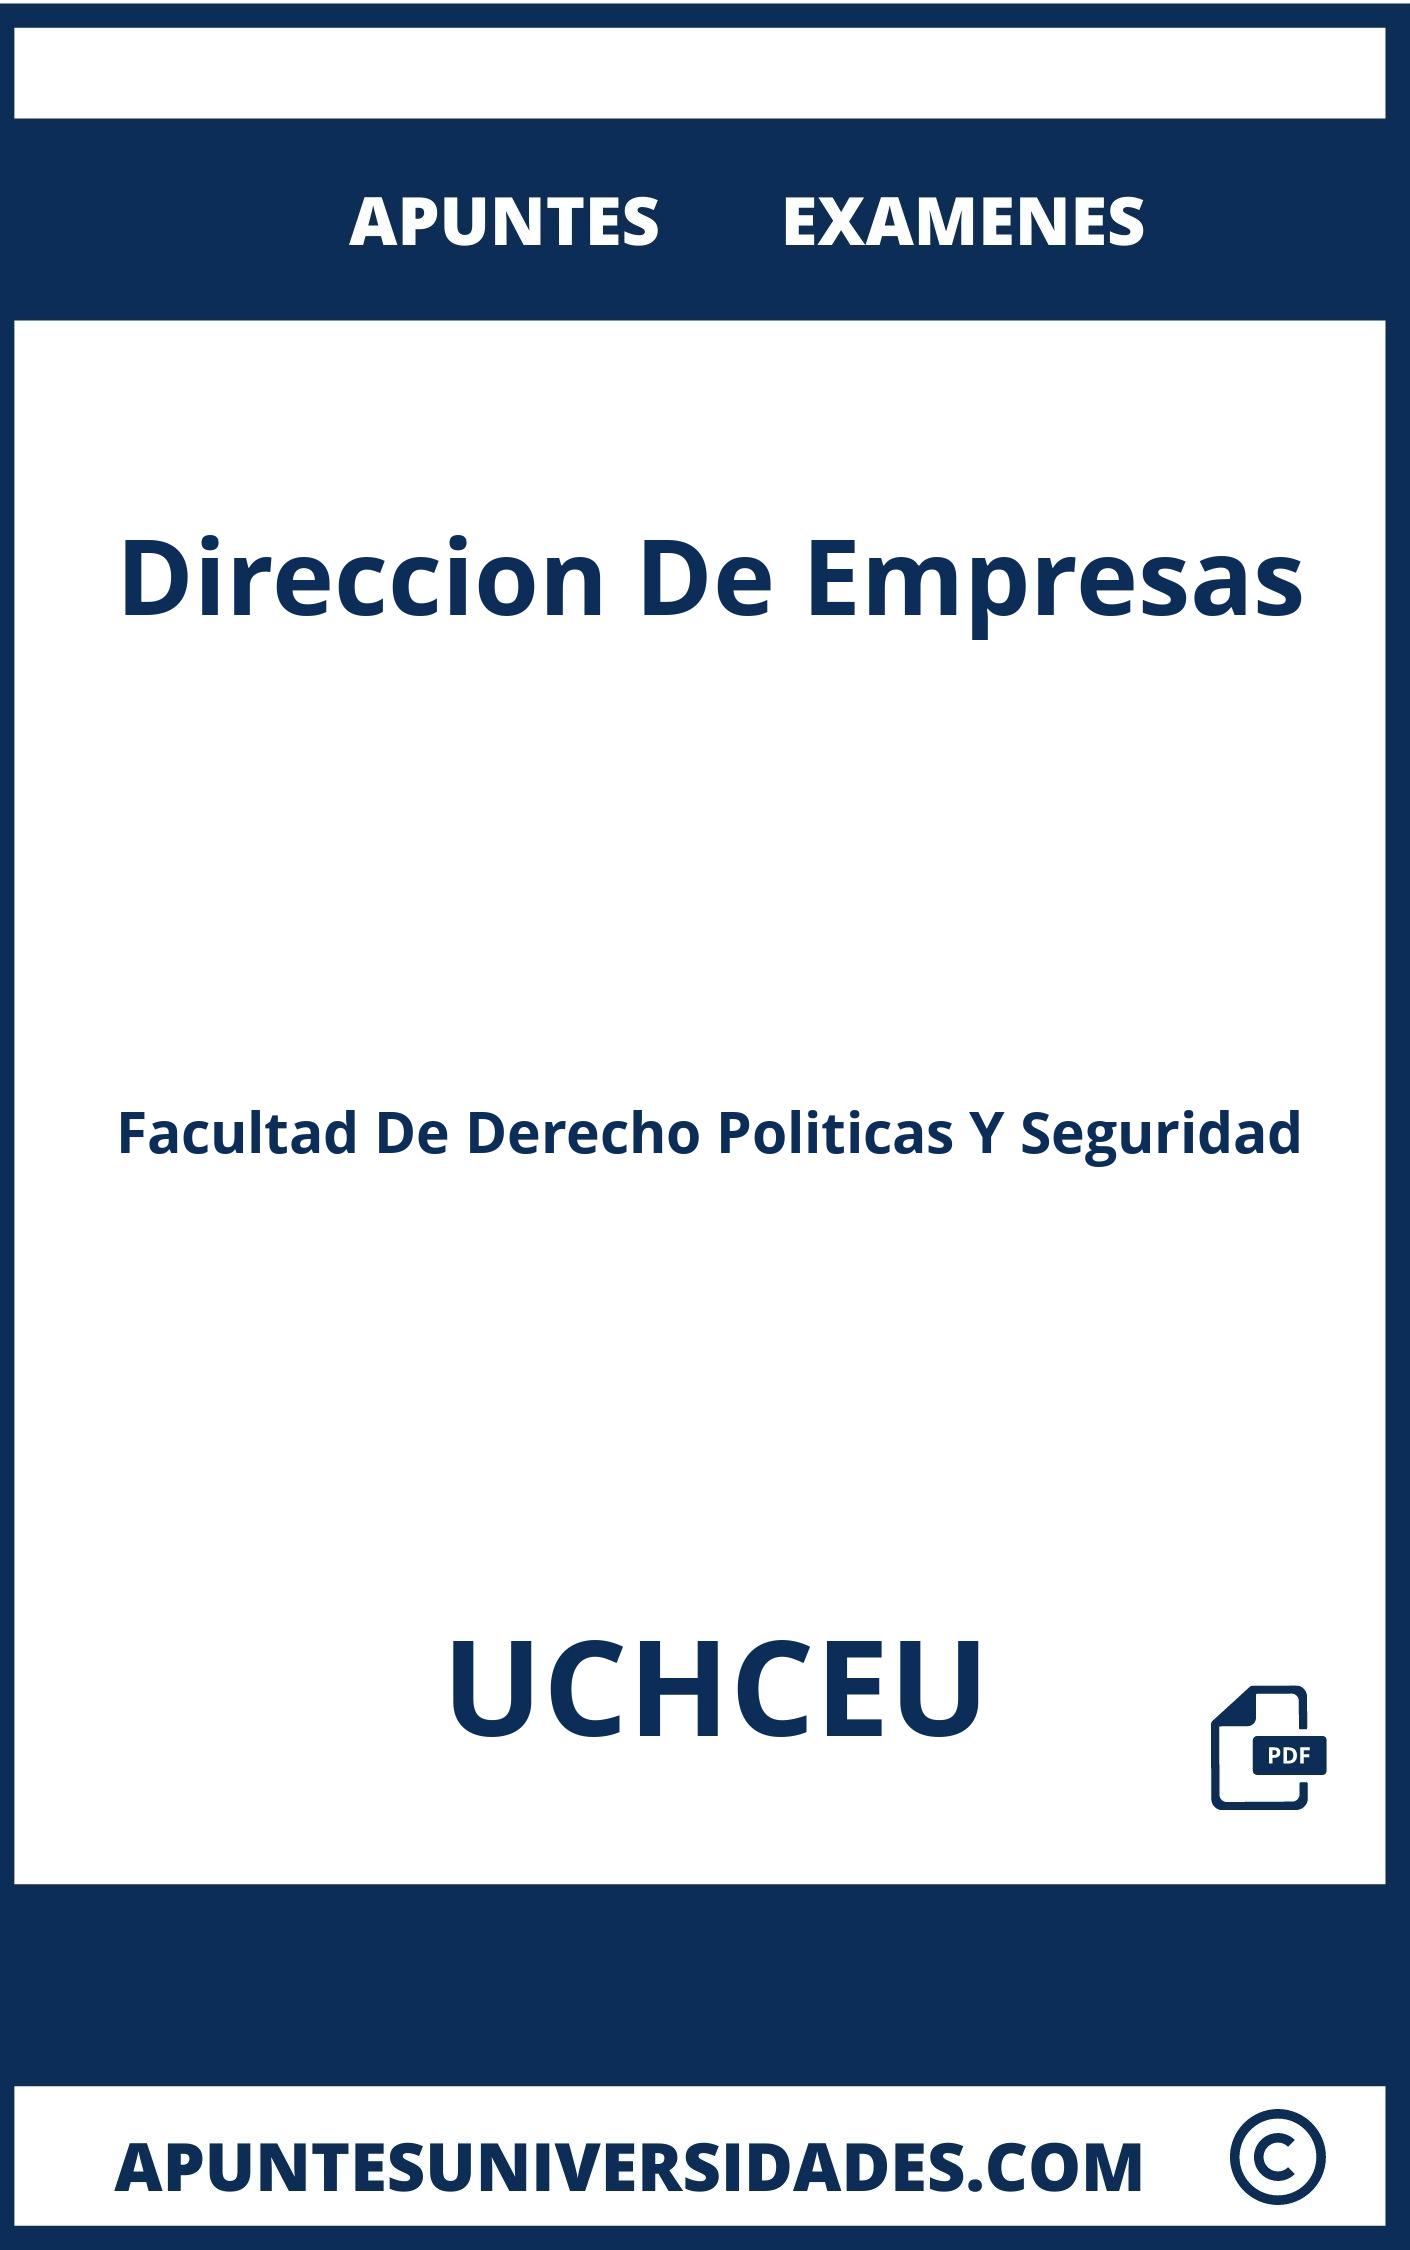 Direccion De Empresas UCHCEU Examenes Apuntes